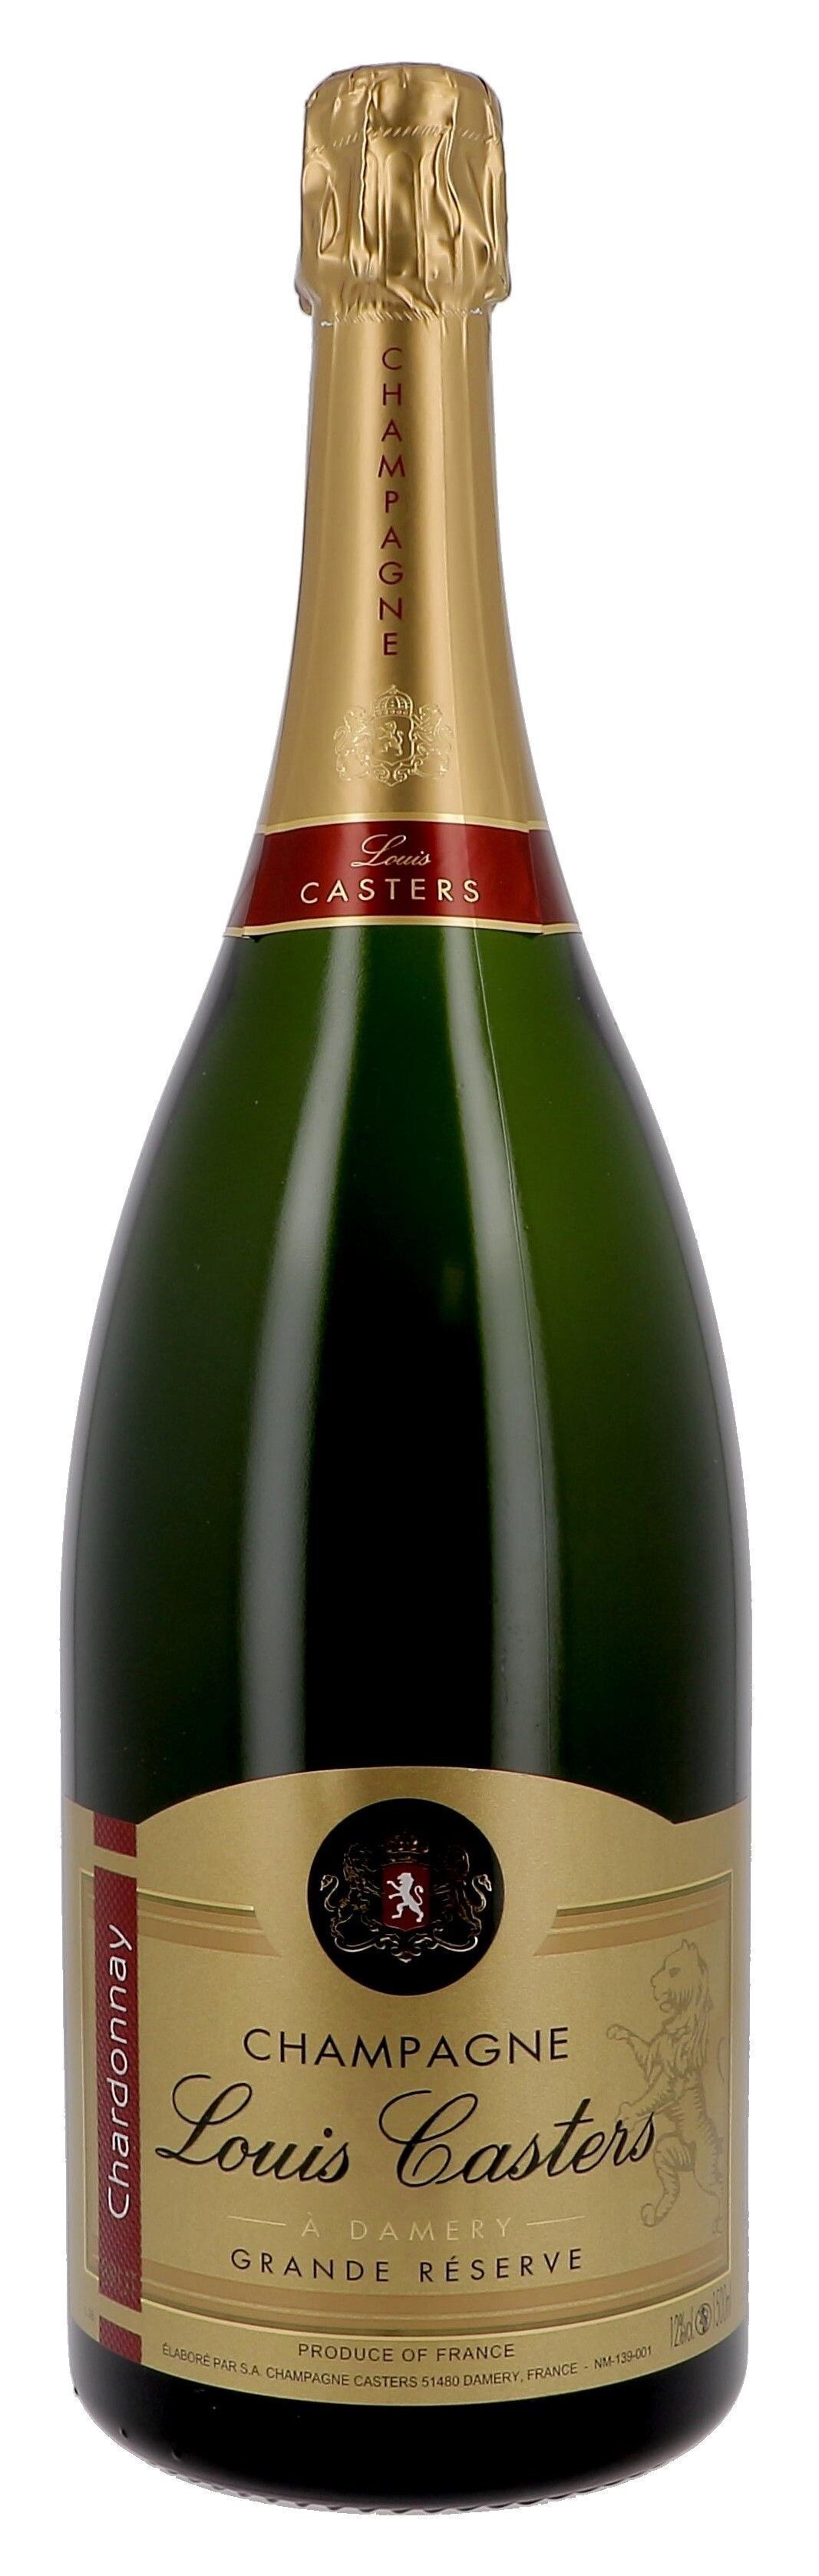 Champagne Louis Casters Grande Reserve 1.5L Brut blancs de blancs (Champagne)